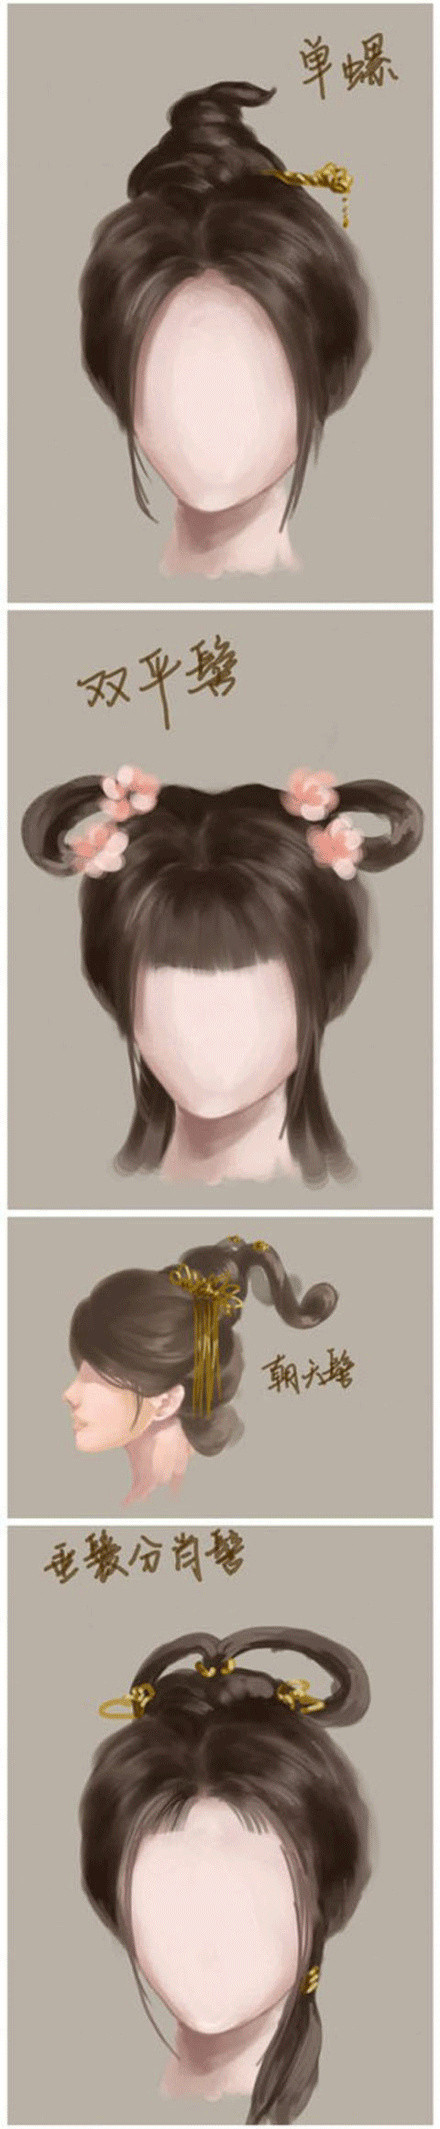 中国古代女子发型名